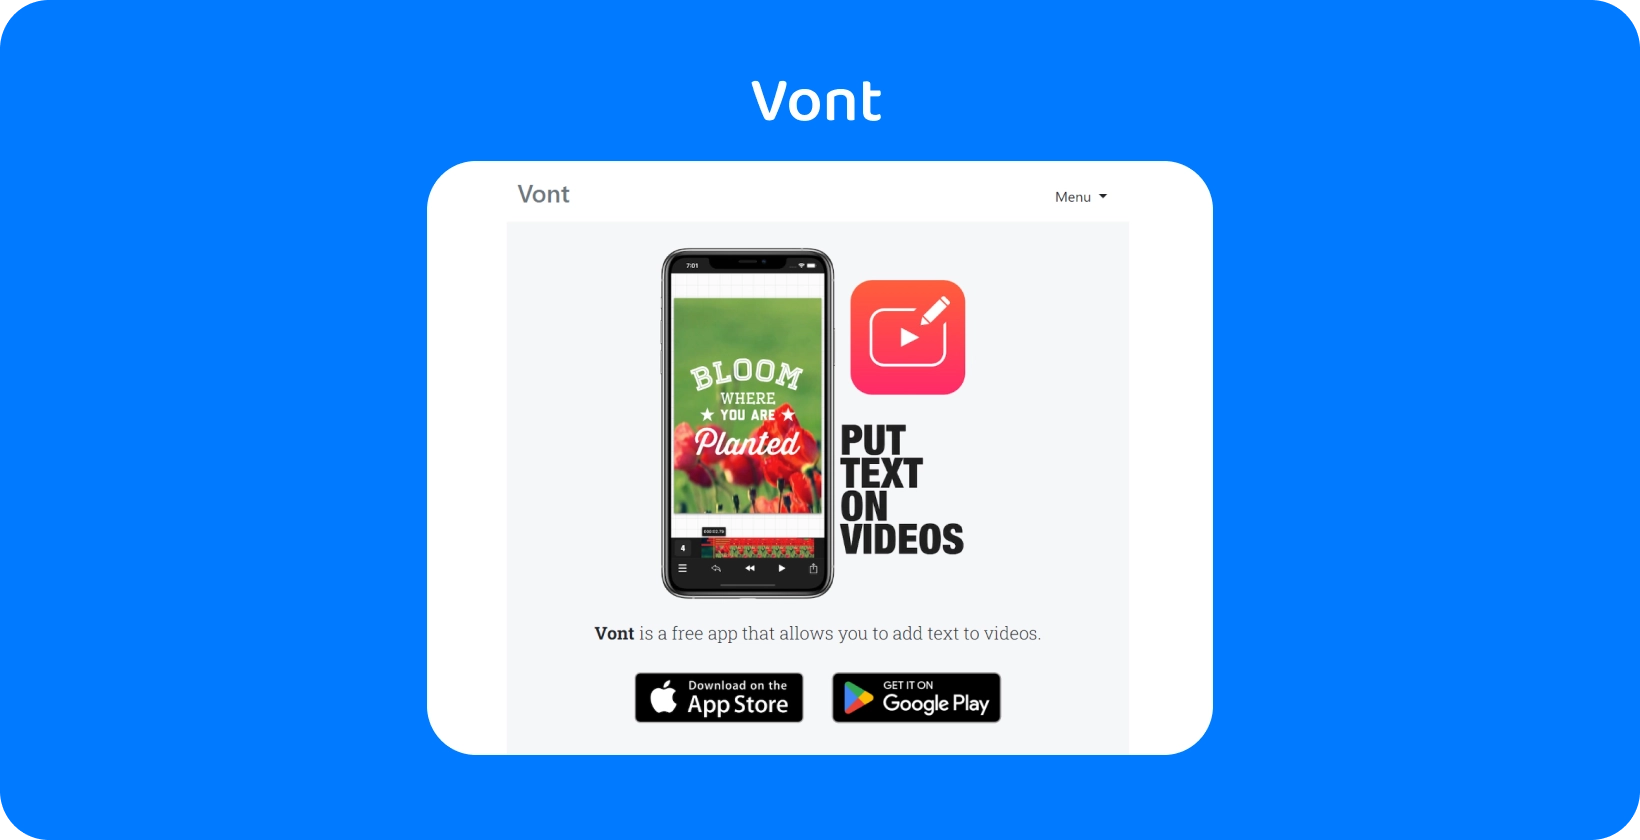 Pametni telefon, ki prikazuje vmesnik Vont aplikacije, s poudarkom na njegovi funkciji za dodajanje besedila na videoposnetke, ki so na voljo na App Store in Google Play